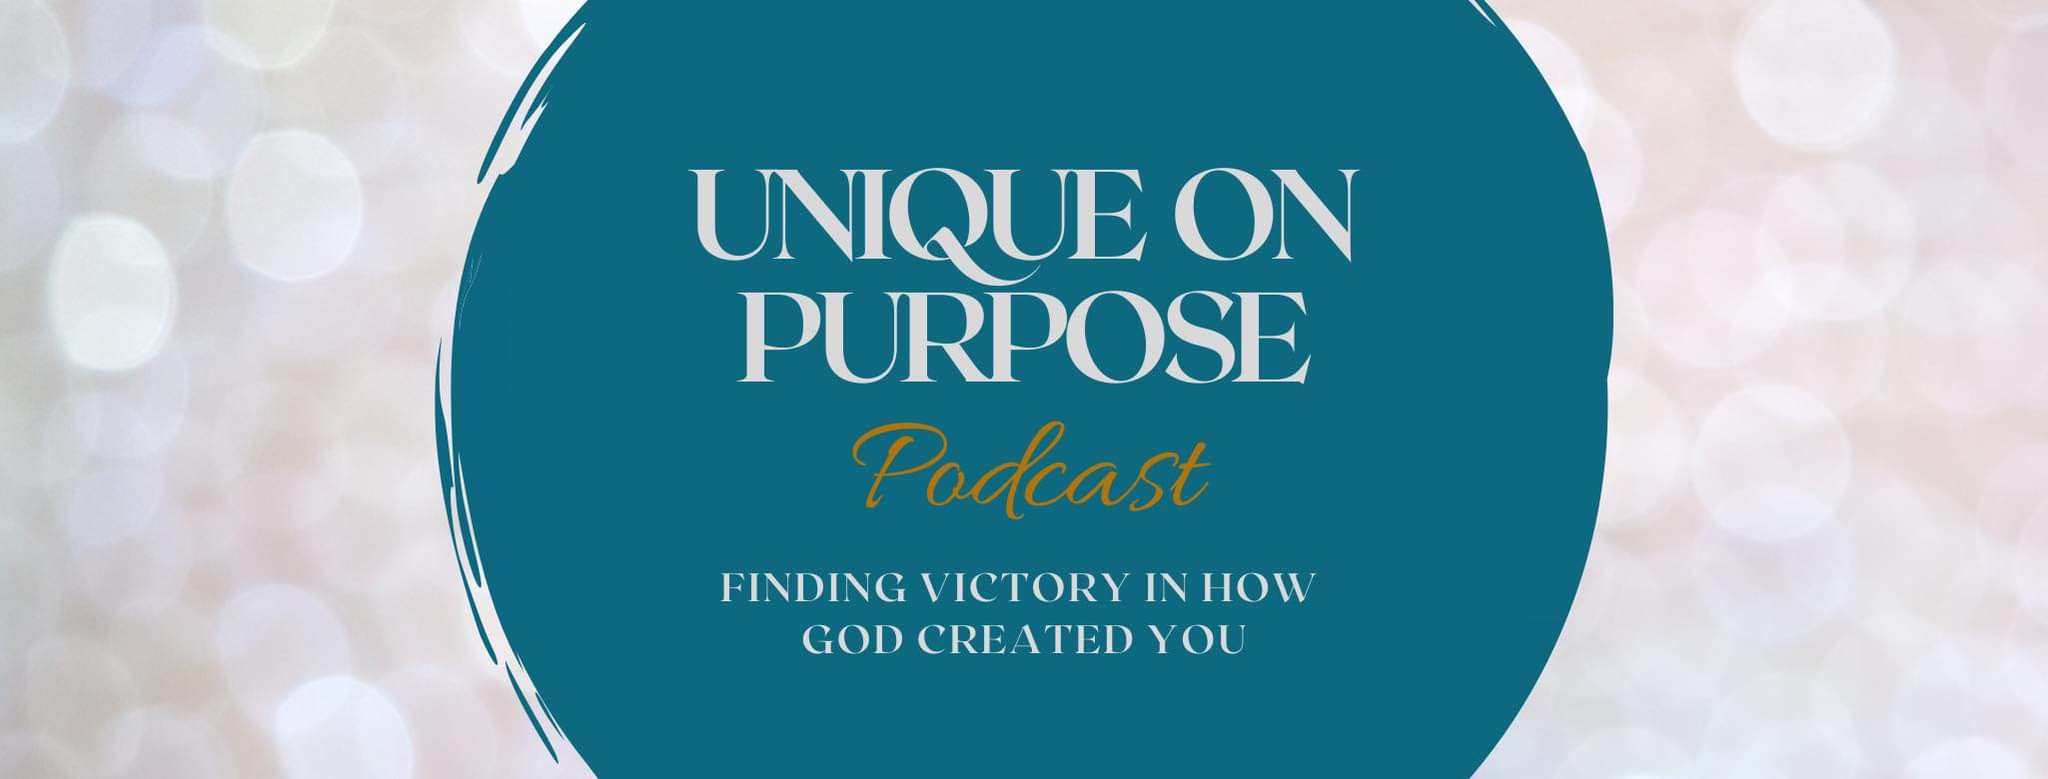 Unique On Purpose Podcast